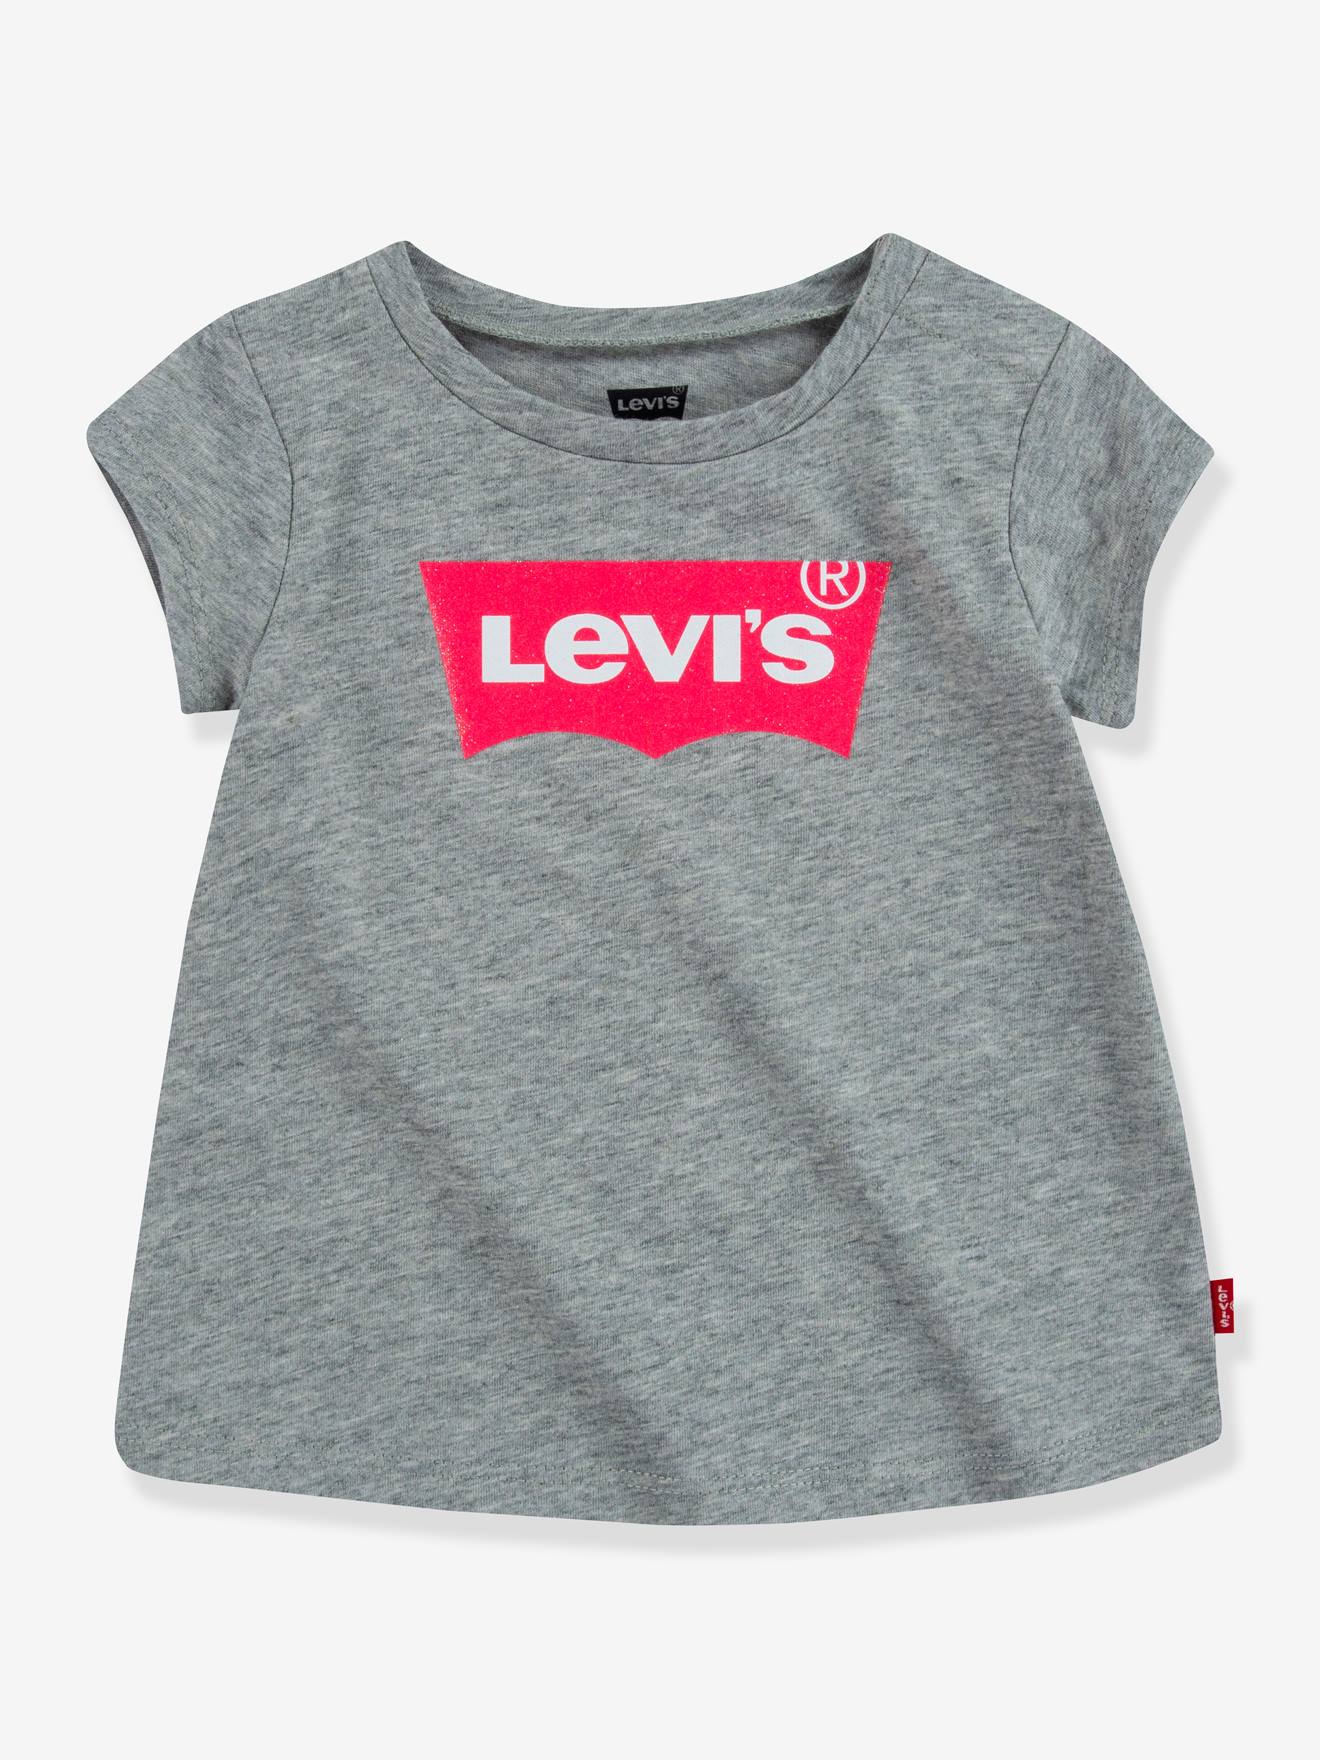 LEVIS KID'S Camiseta para bebé Batwing de Levi's® gris